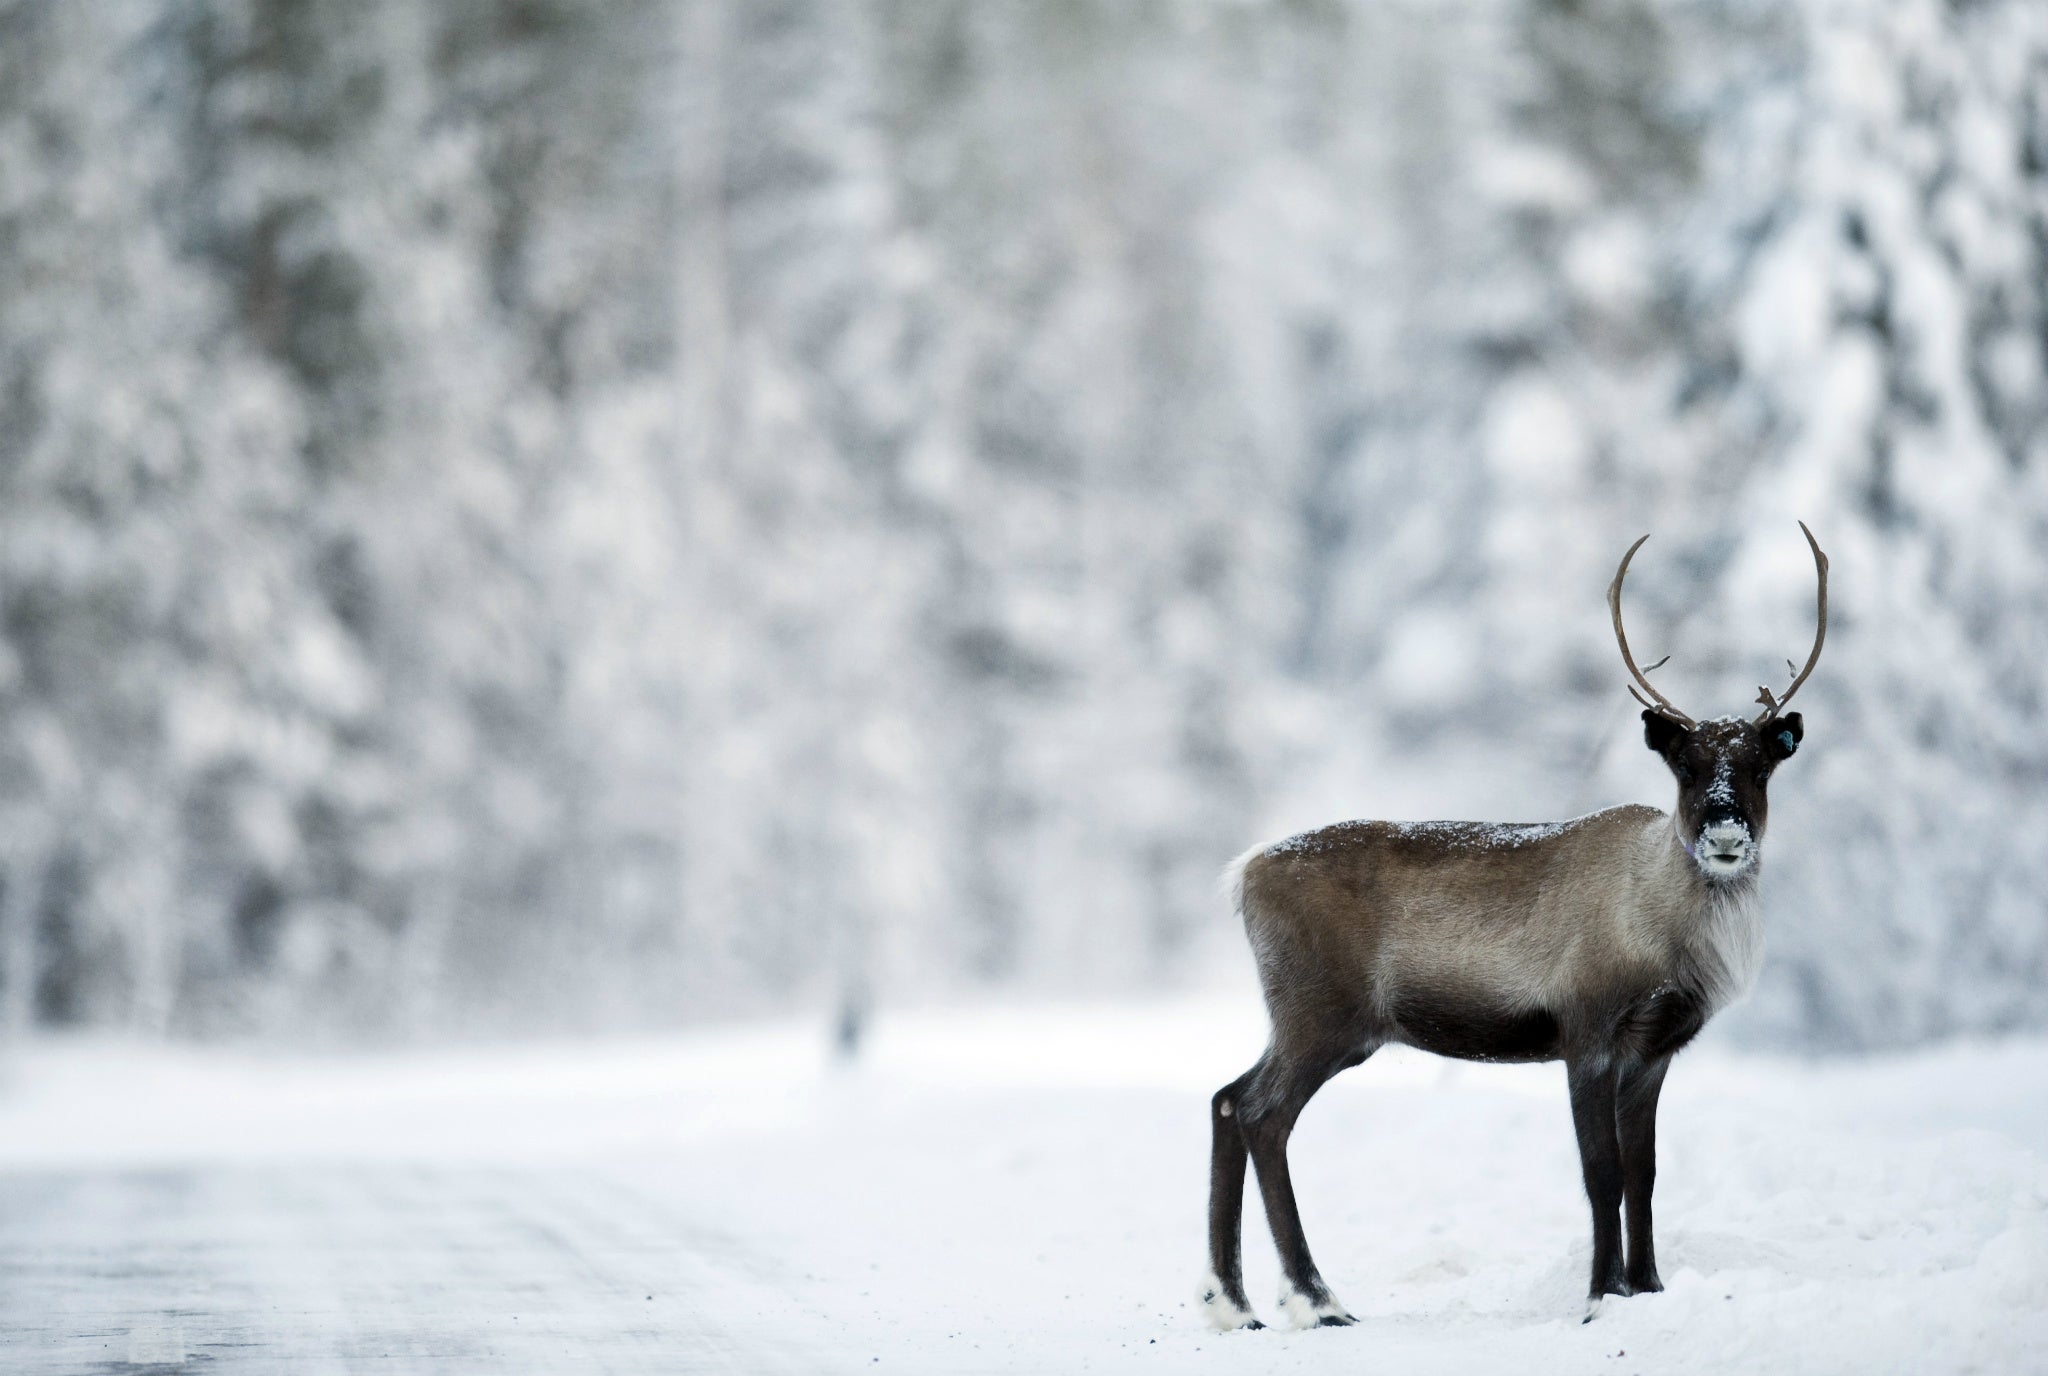 Reindeer in Norway have been shrinking